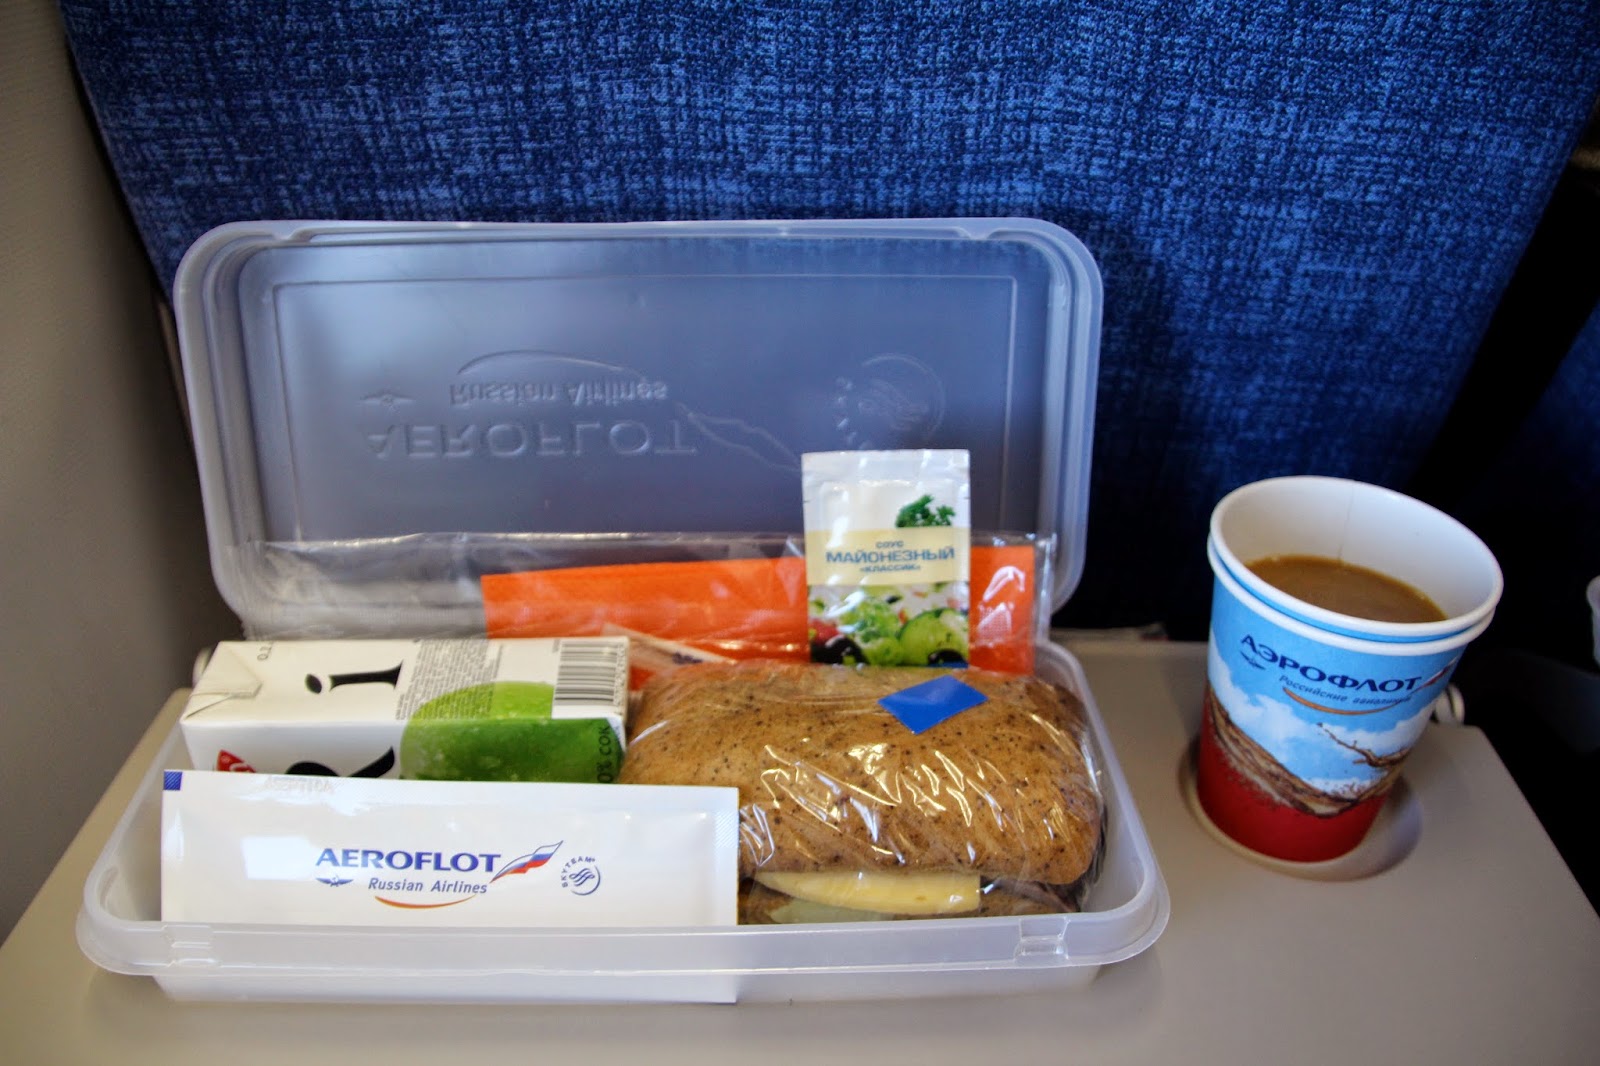 Вода в самолете аэрофлот. Сэндвич Аэрофлот. Питание на рейсе Аэрофлота. Питание в самолете Аэрофлот. Аэрофлот питание сэндвичи.